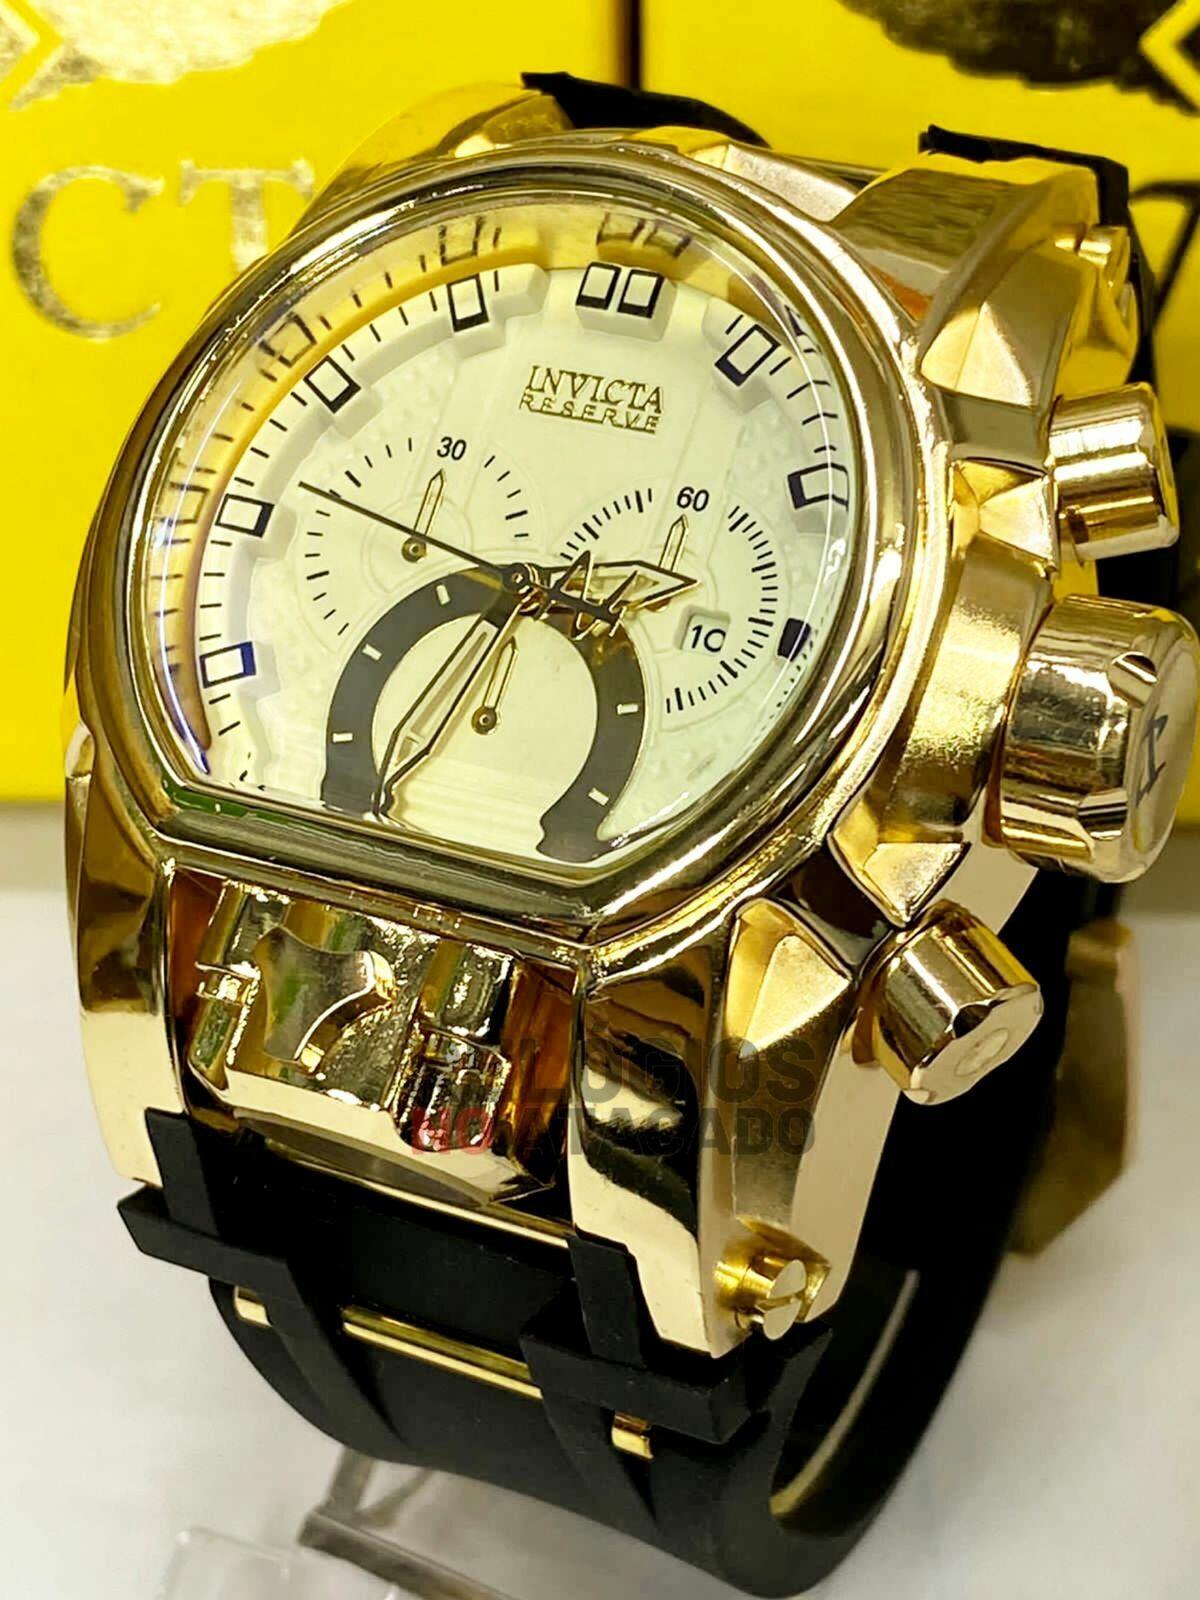 Relógios da Magnum com pulseira de borracha